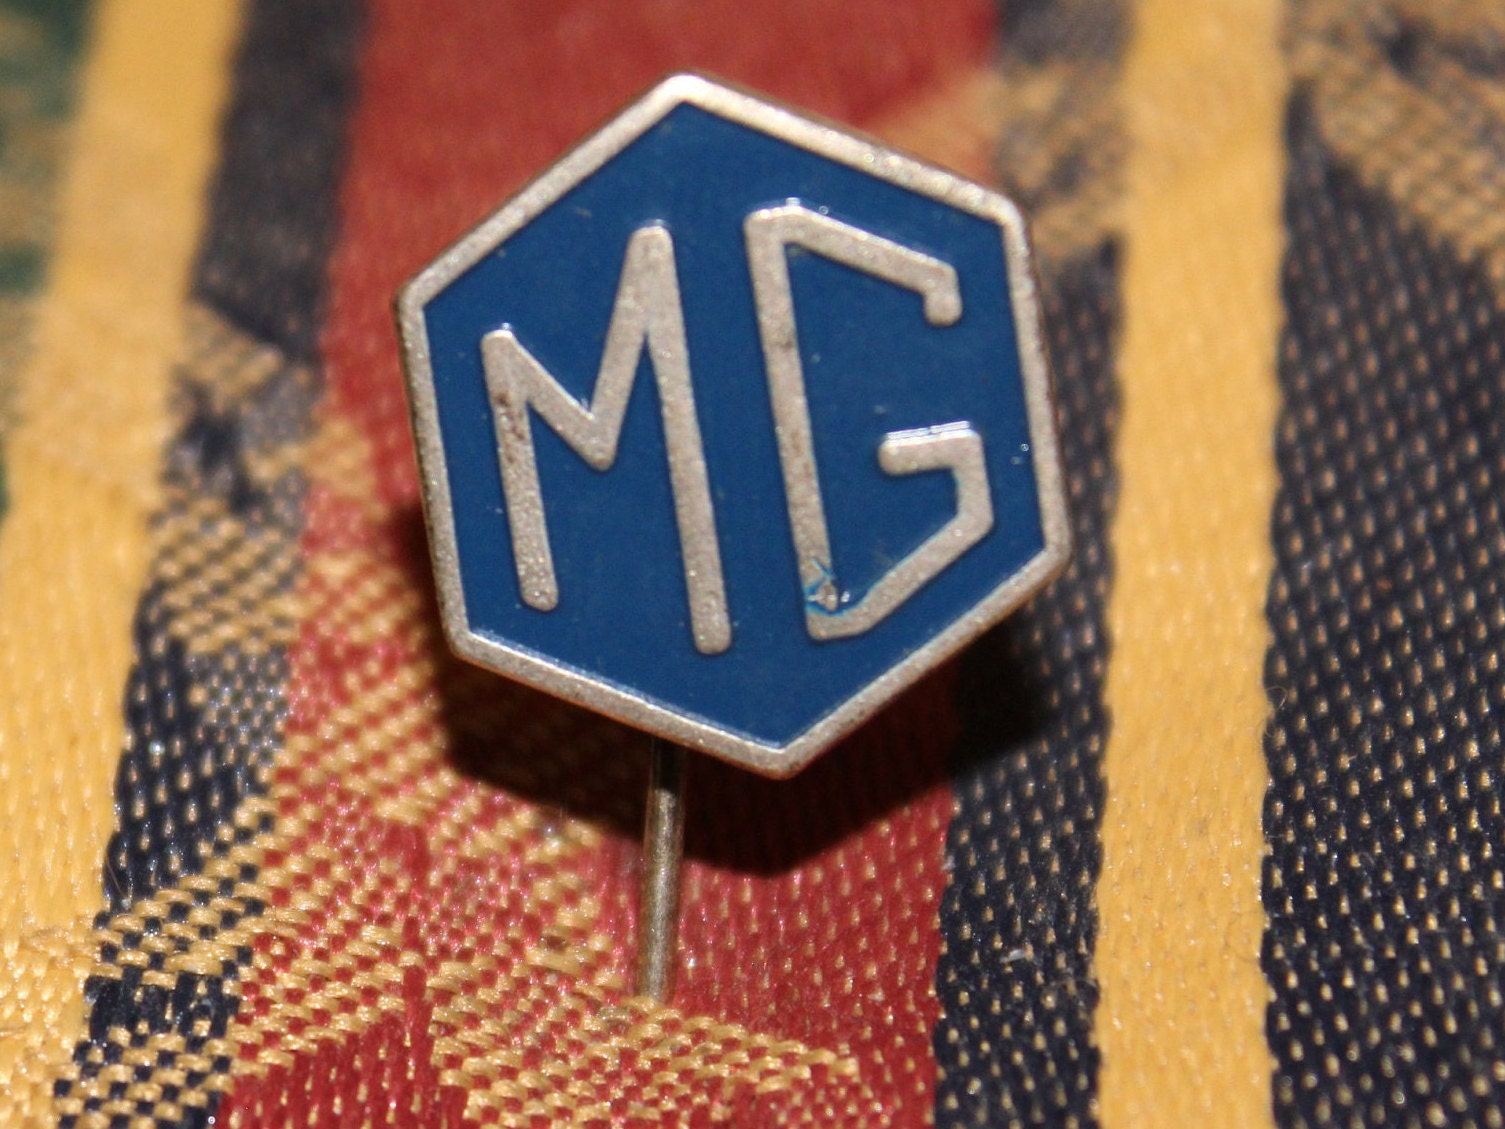 Mg emblem - .de